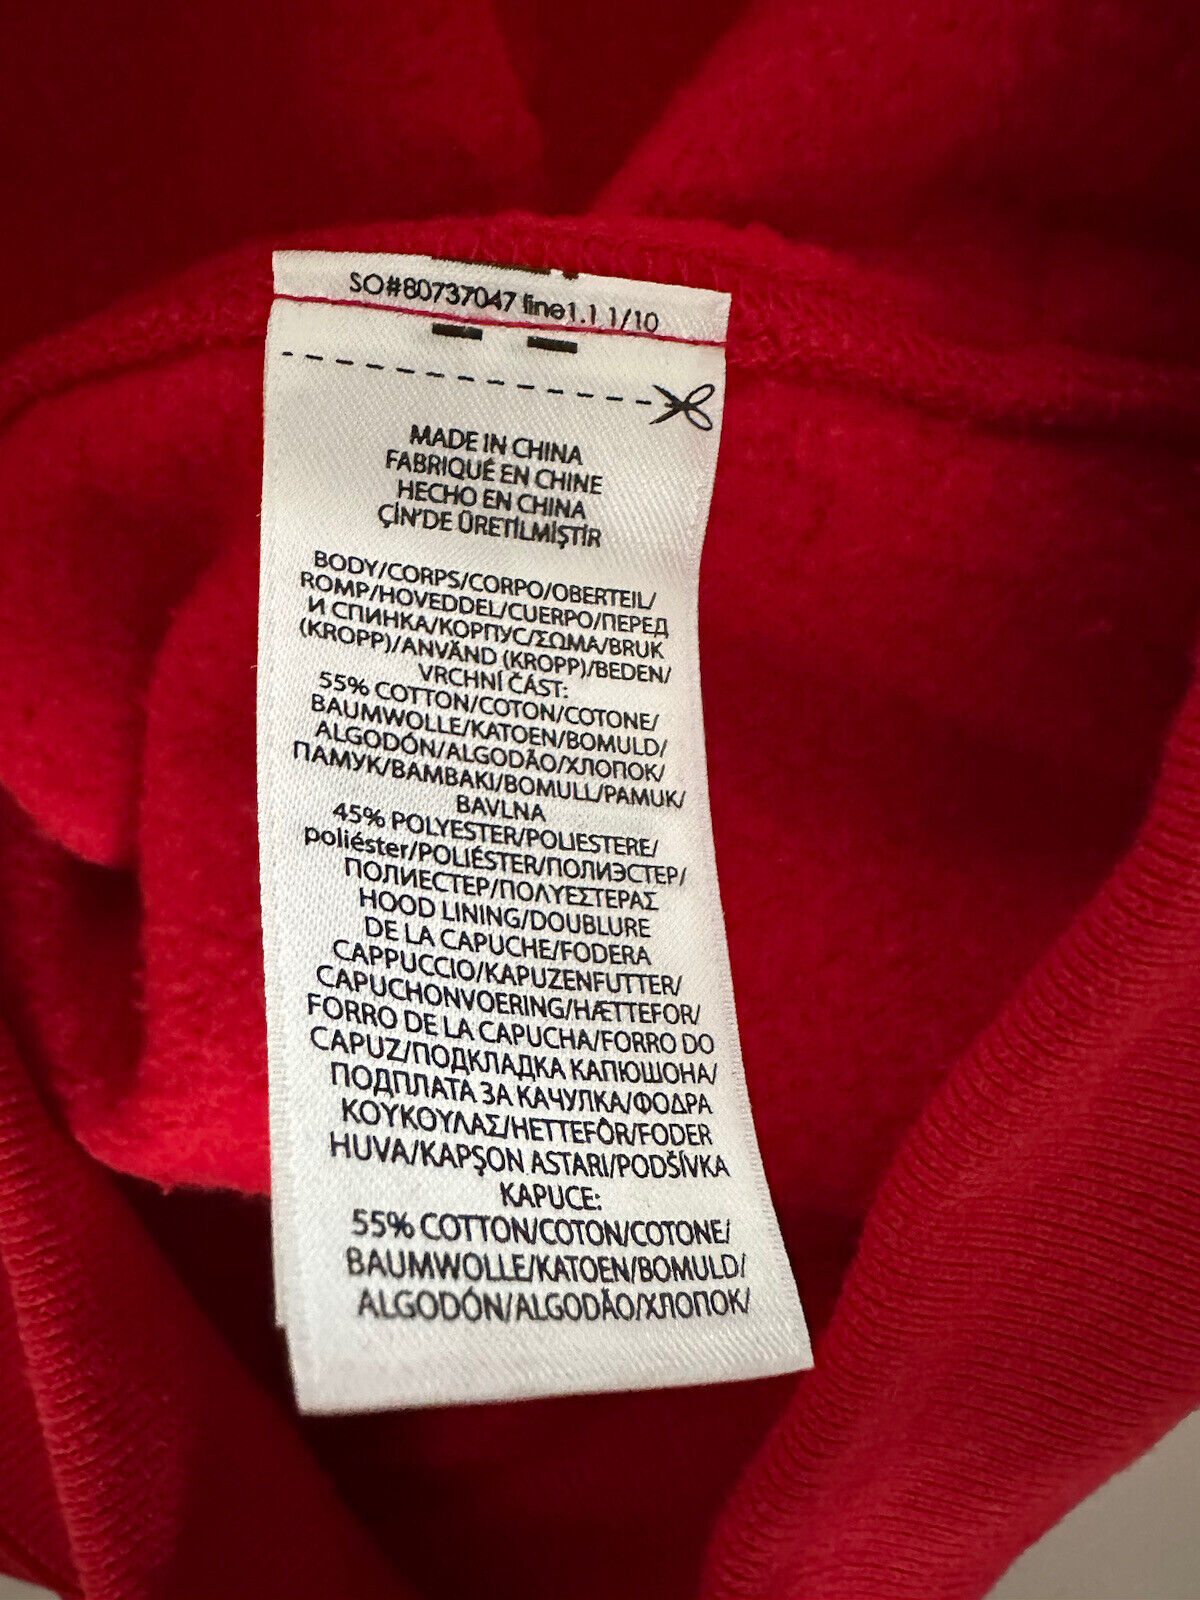 Neu mit Etikett: 188 $ Polo Ralph Lauren Bear Ralph Mug Fleece-Kapuzenpullover, Rot, Größe L 